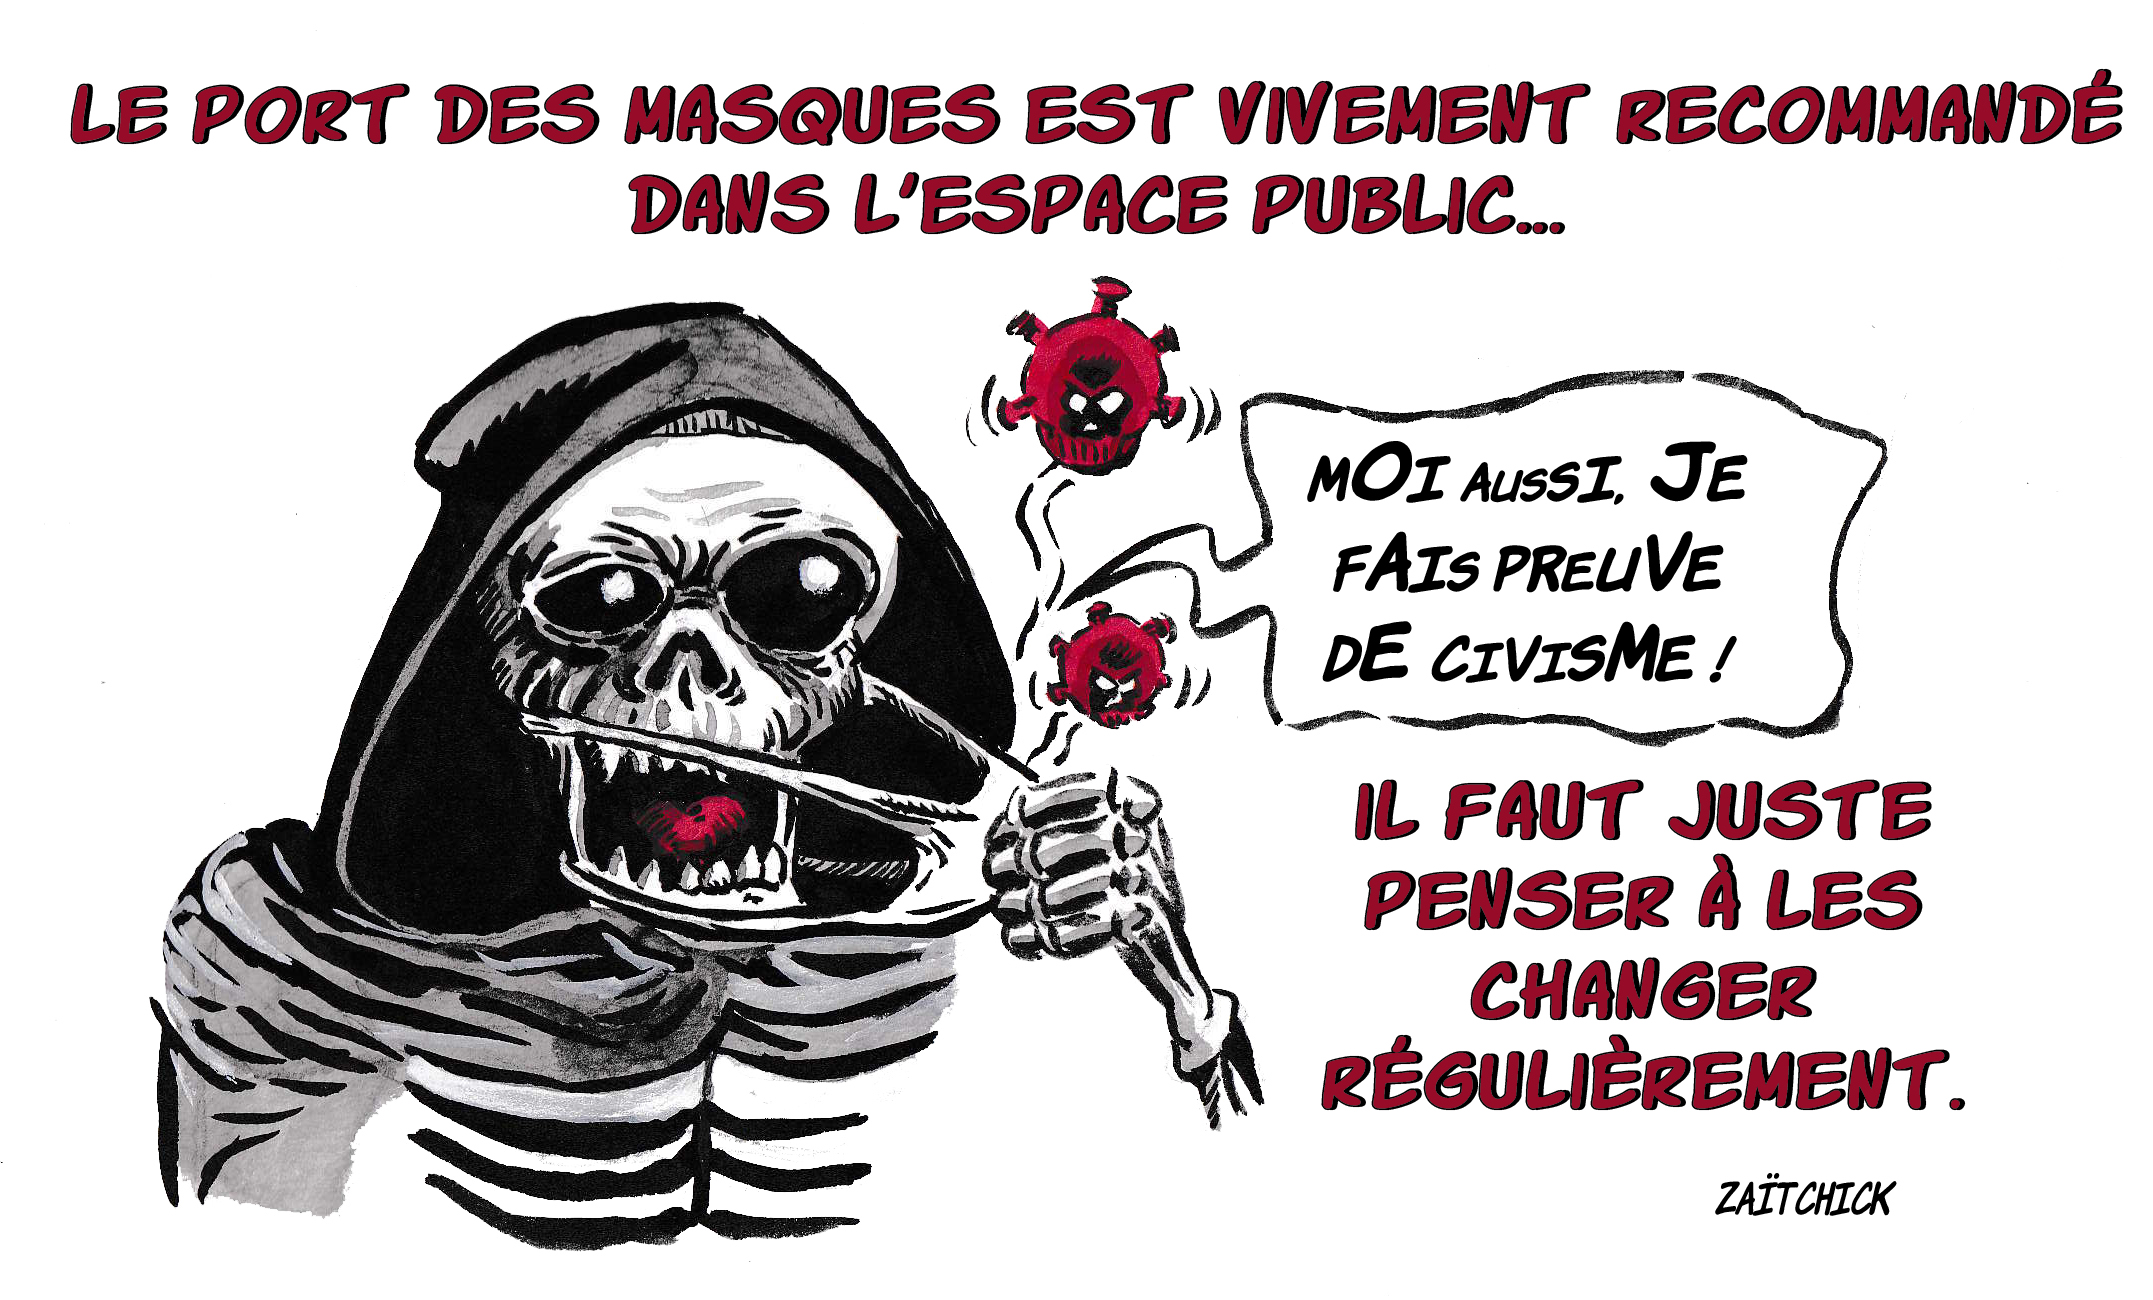 Covid-19 : Les masques et les "gestes barrières" sont inutiles (Prof. Denis Rancourt) - Page 4 10-mai-2020-le-masque-de-la-mort-bouge